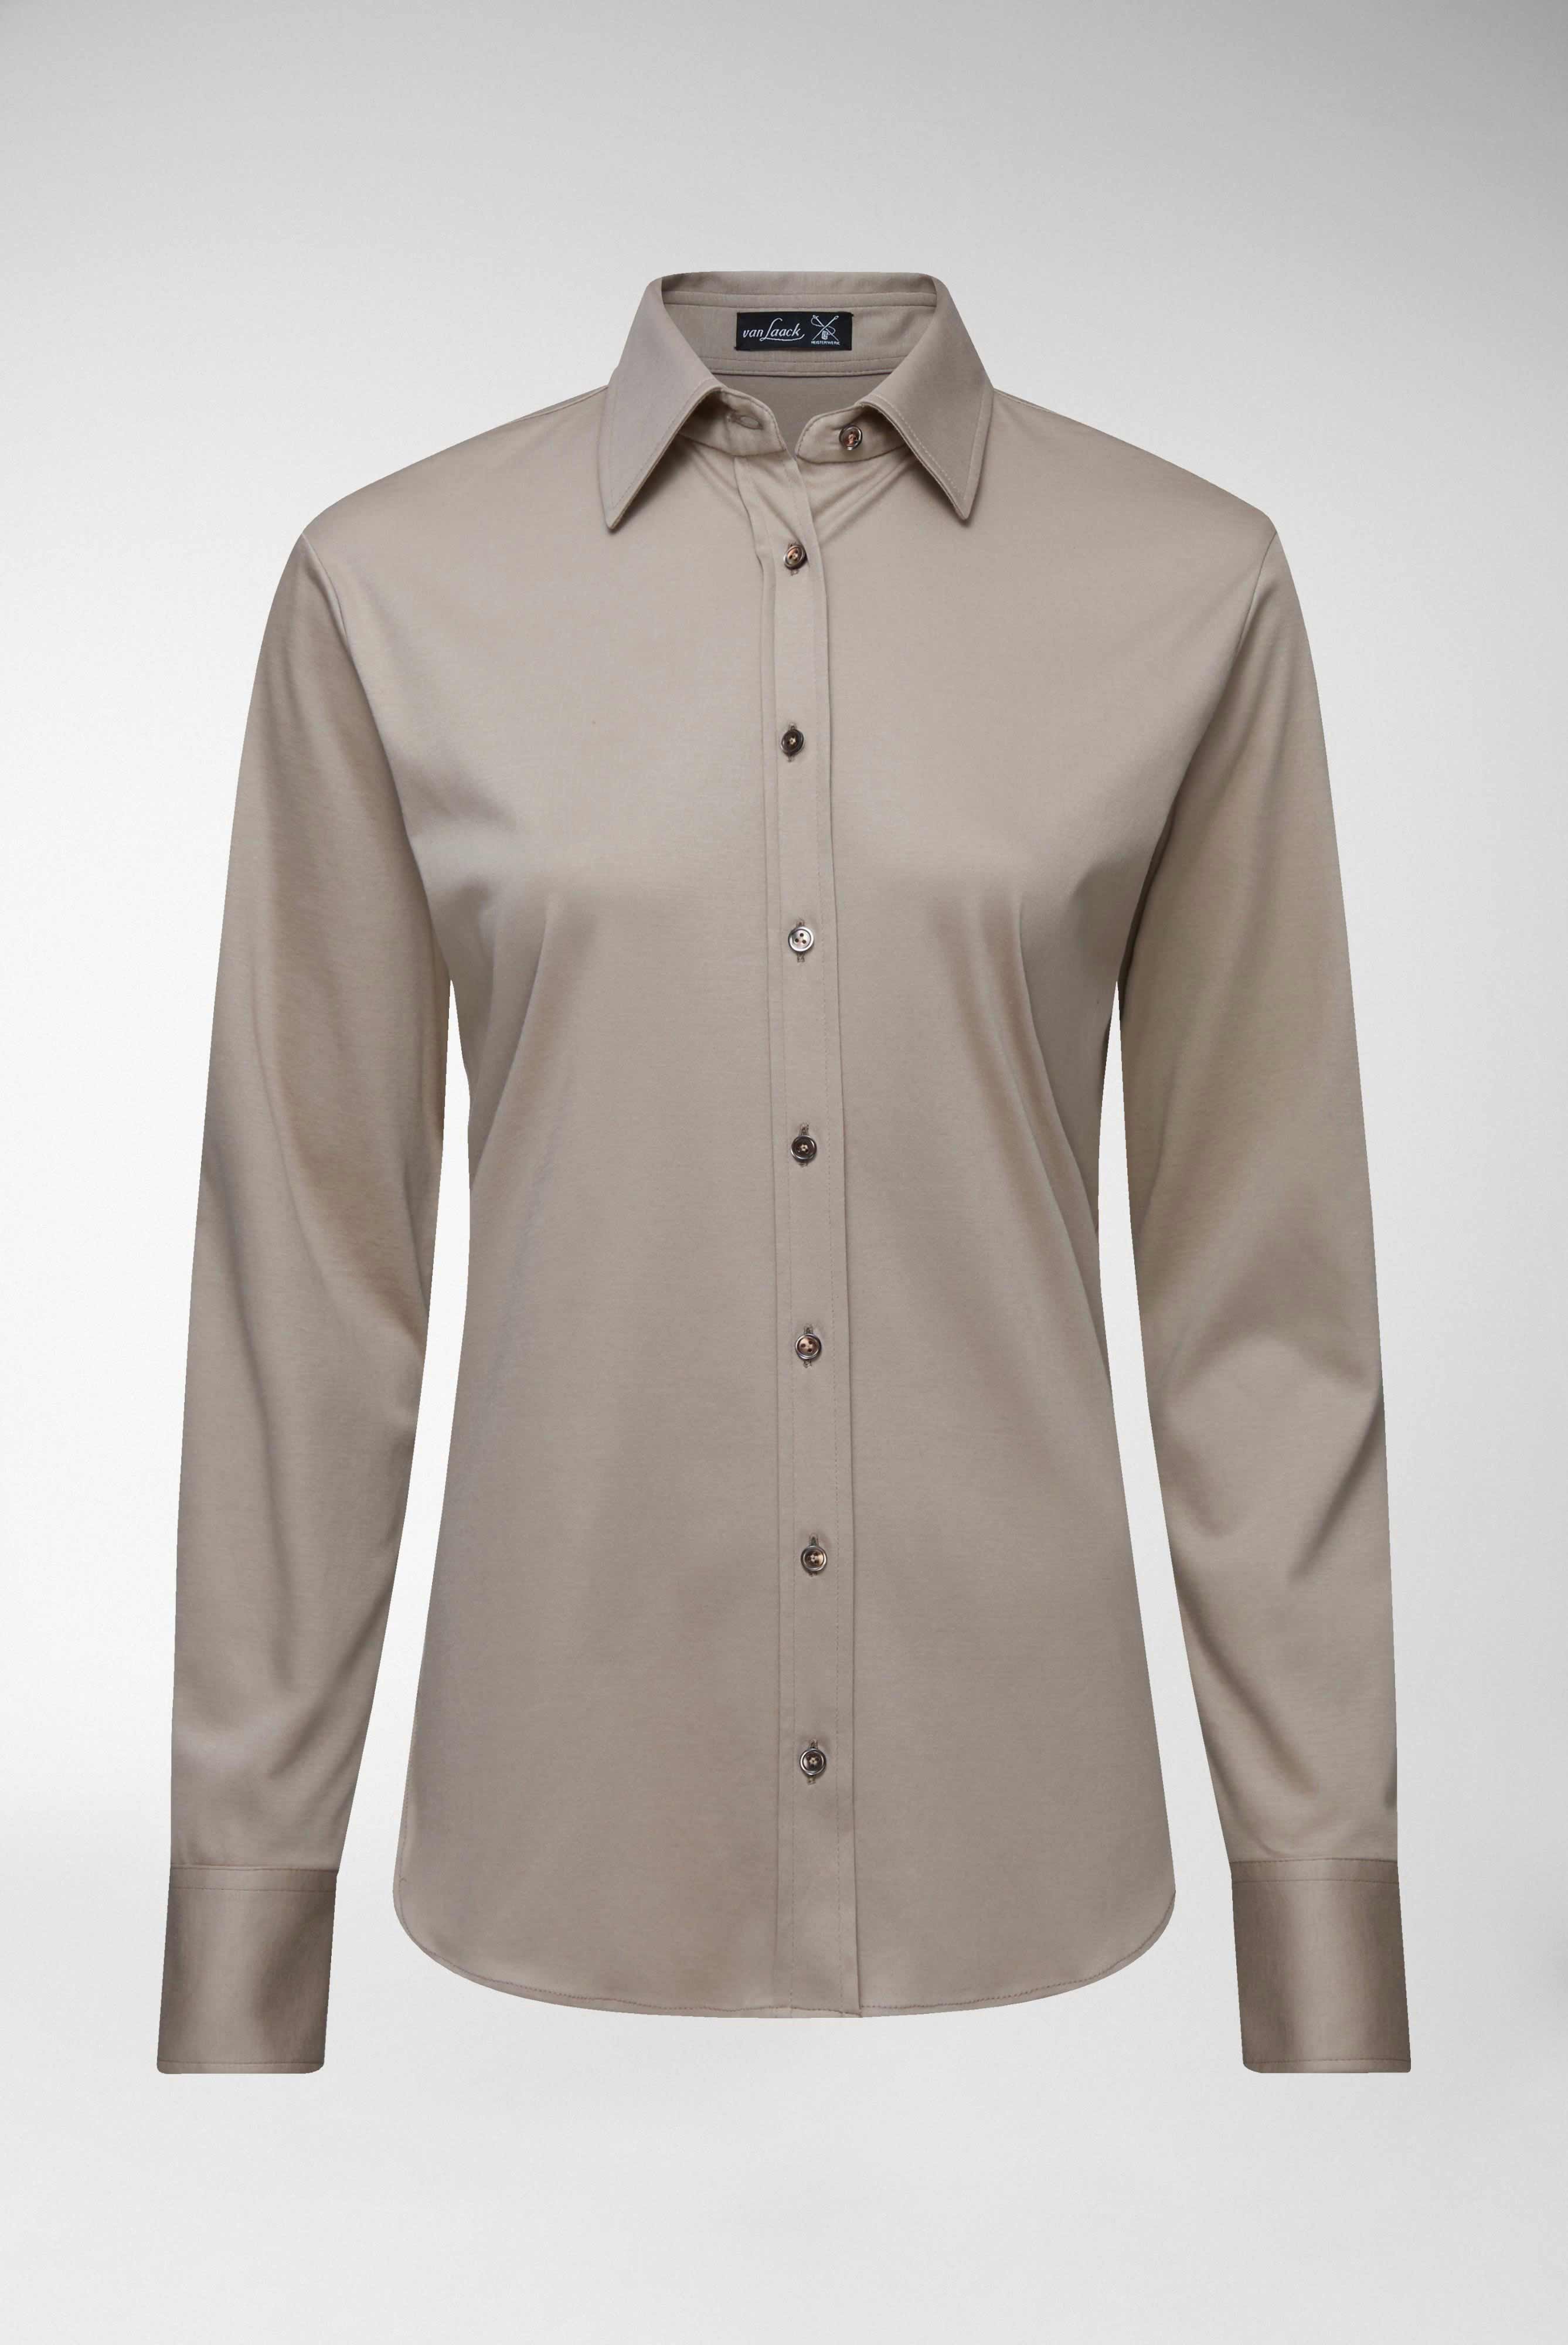 Casual Blusen+Taillierte Jersey Hemdbluse aus Schweizer Baumwolle+05.603Y..180031.140.44